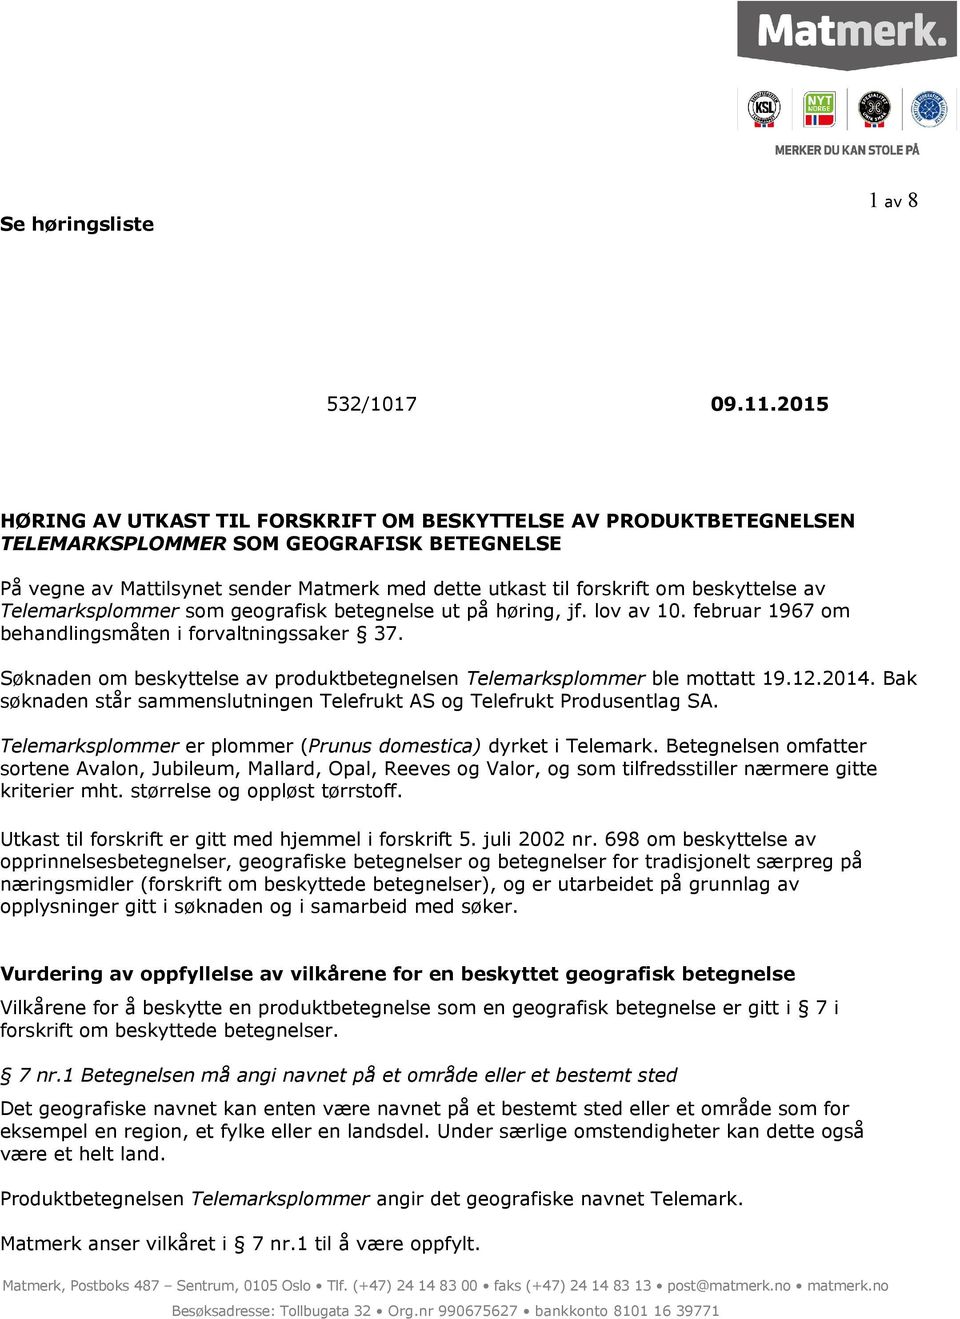 beskyttelse av Telemarksplommer som geografisk betegnelse ut på høring, jf. lov av 10. februar 1967 om behandlingsmåten i forvaltningssaker 37.